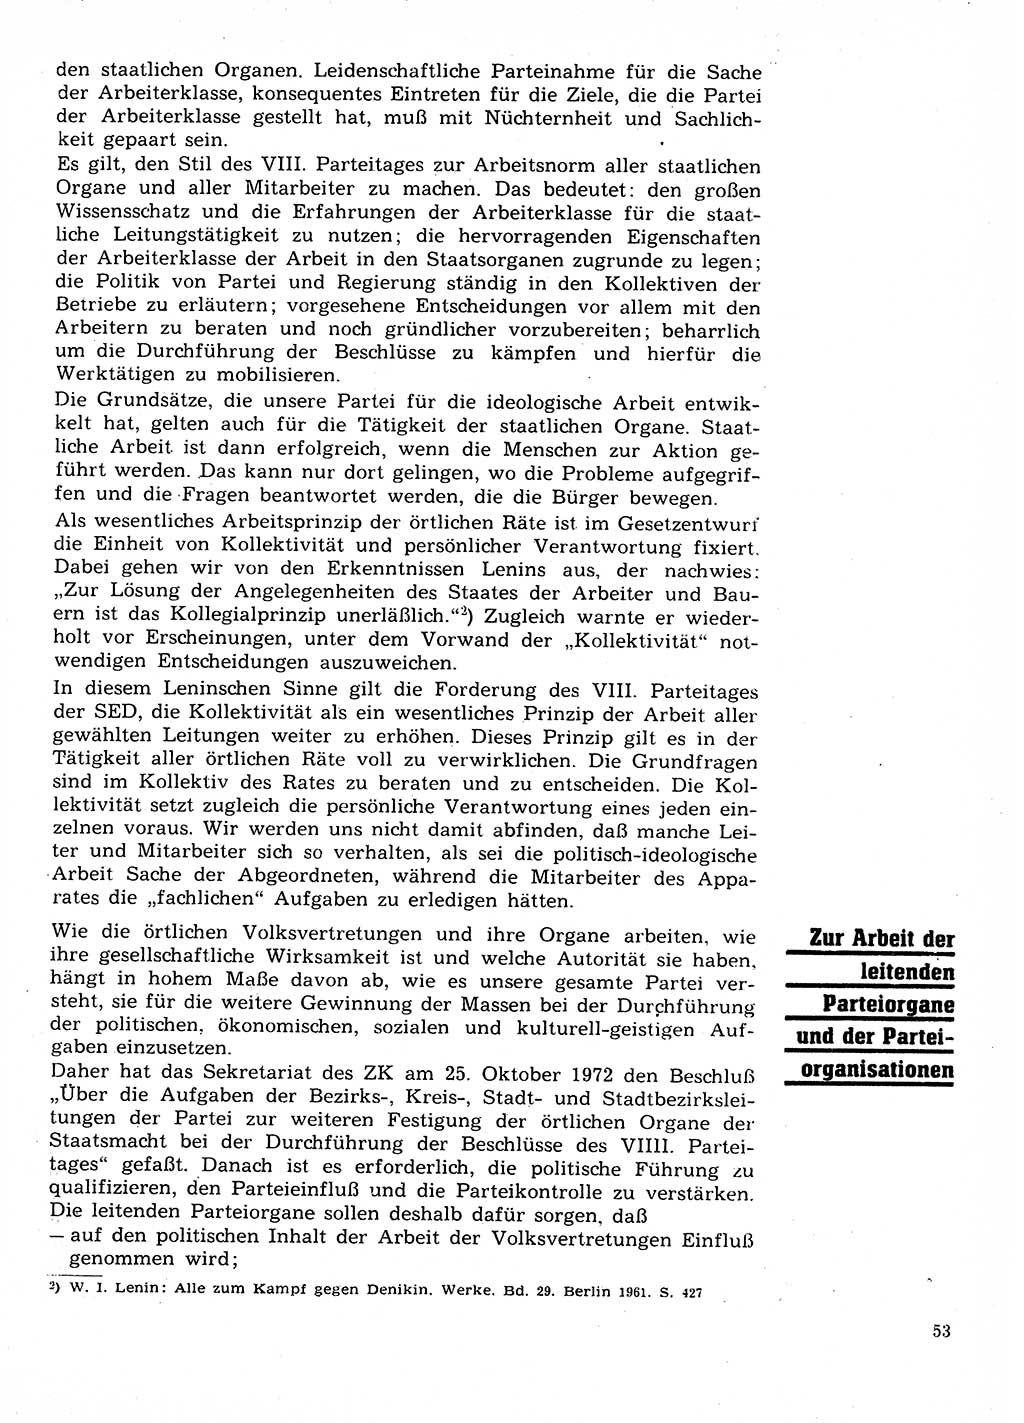 Neuer Weg (NW), Organ des Zentralkomitees (ZK) der SED (Sozialistische Einheitspartei Deutschlands) für Fragen des Parteilebens, 28. Jahrgang [Deutsche Demokratische Republik (DDR)] 1973, Seite 53 (NW ZK SED DDR 1973, S. 53)